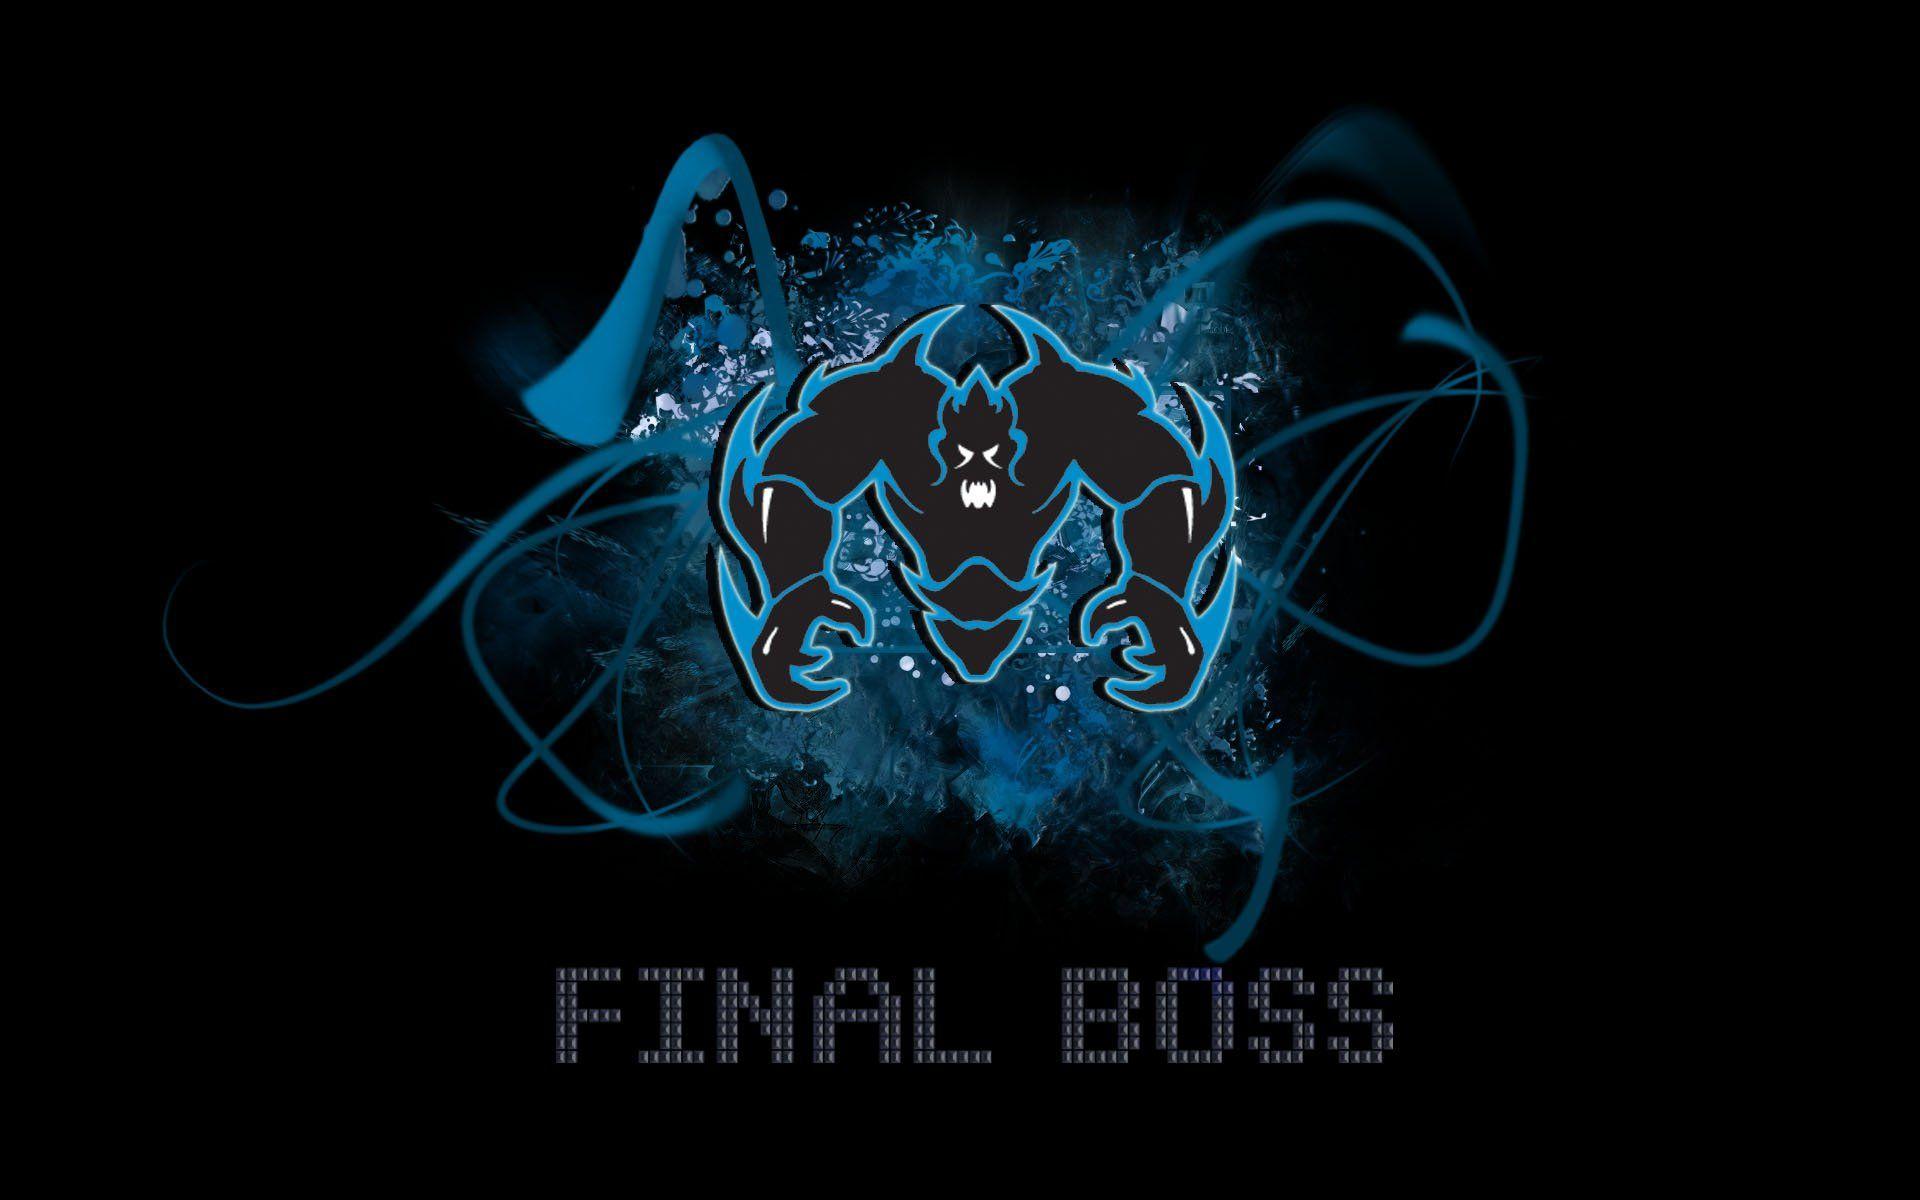 Mlg Final Boss